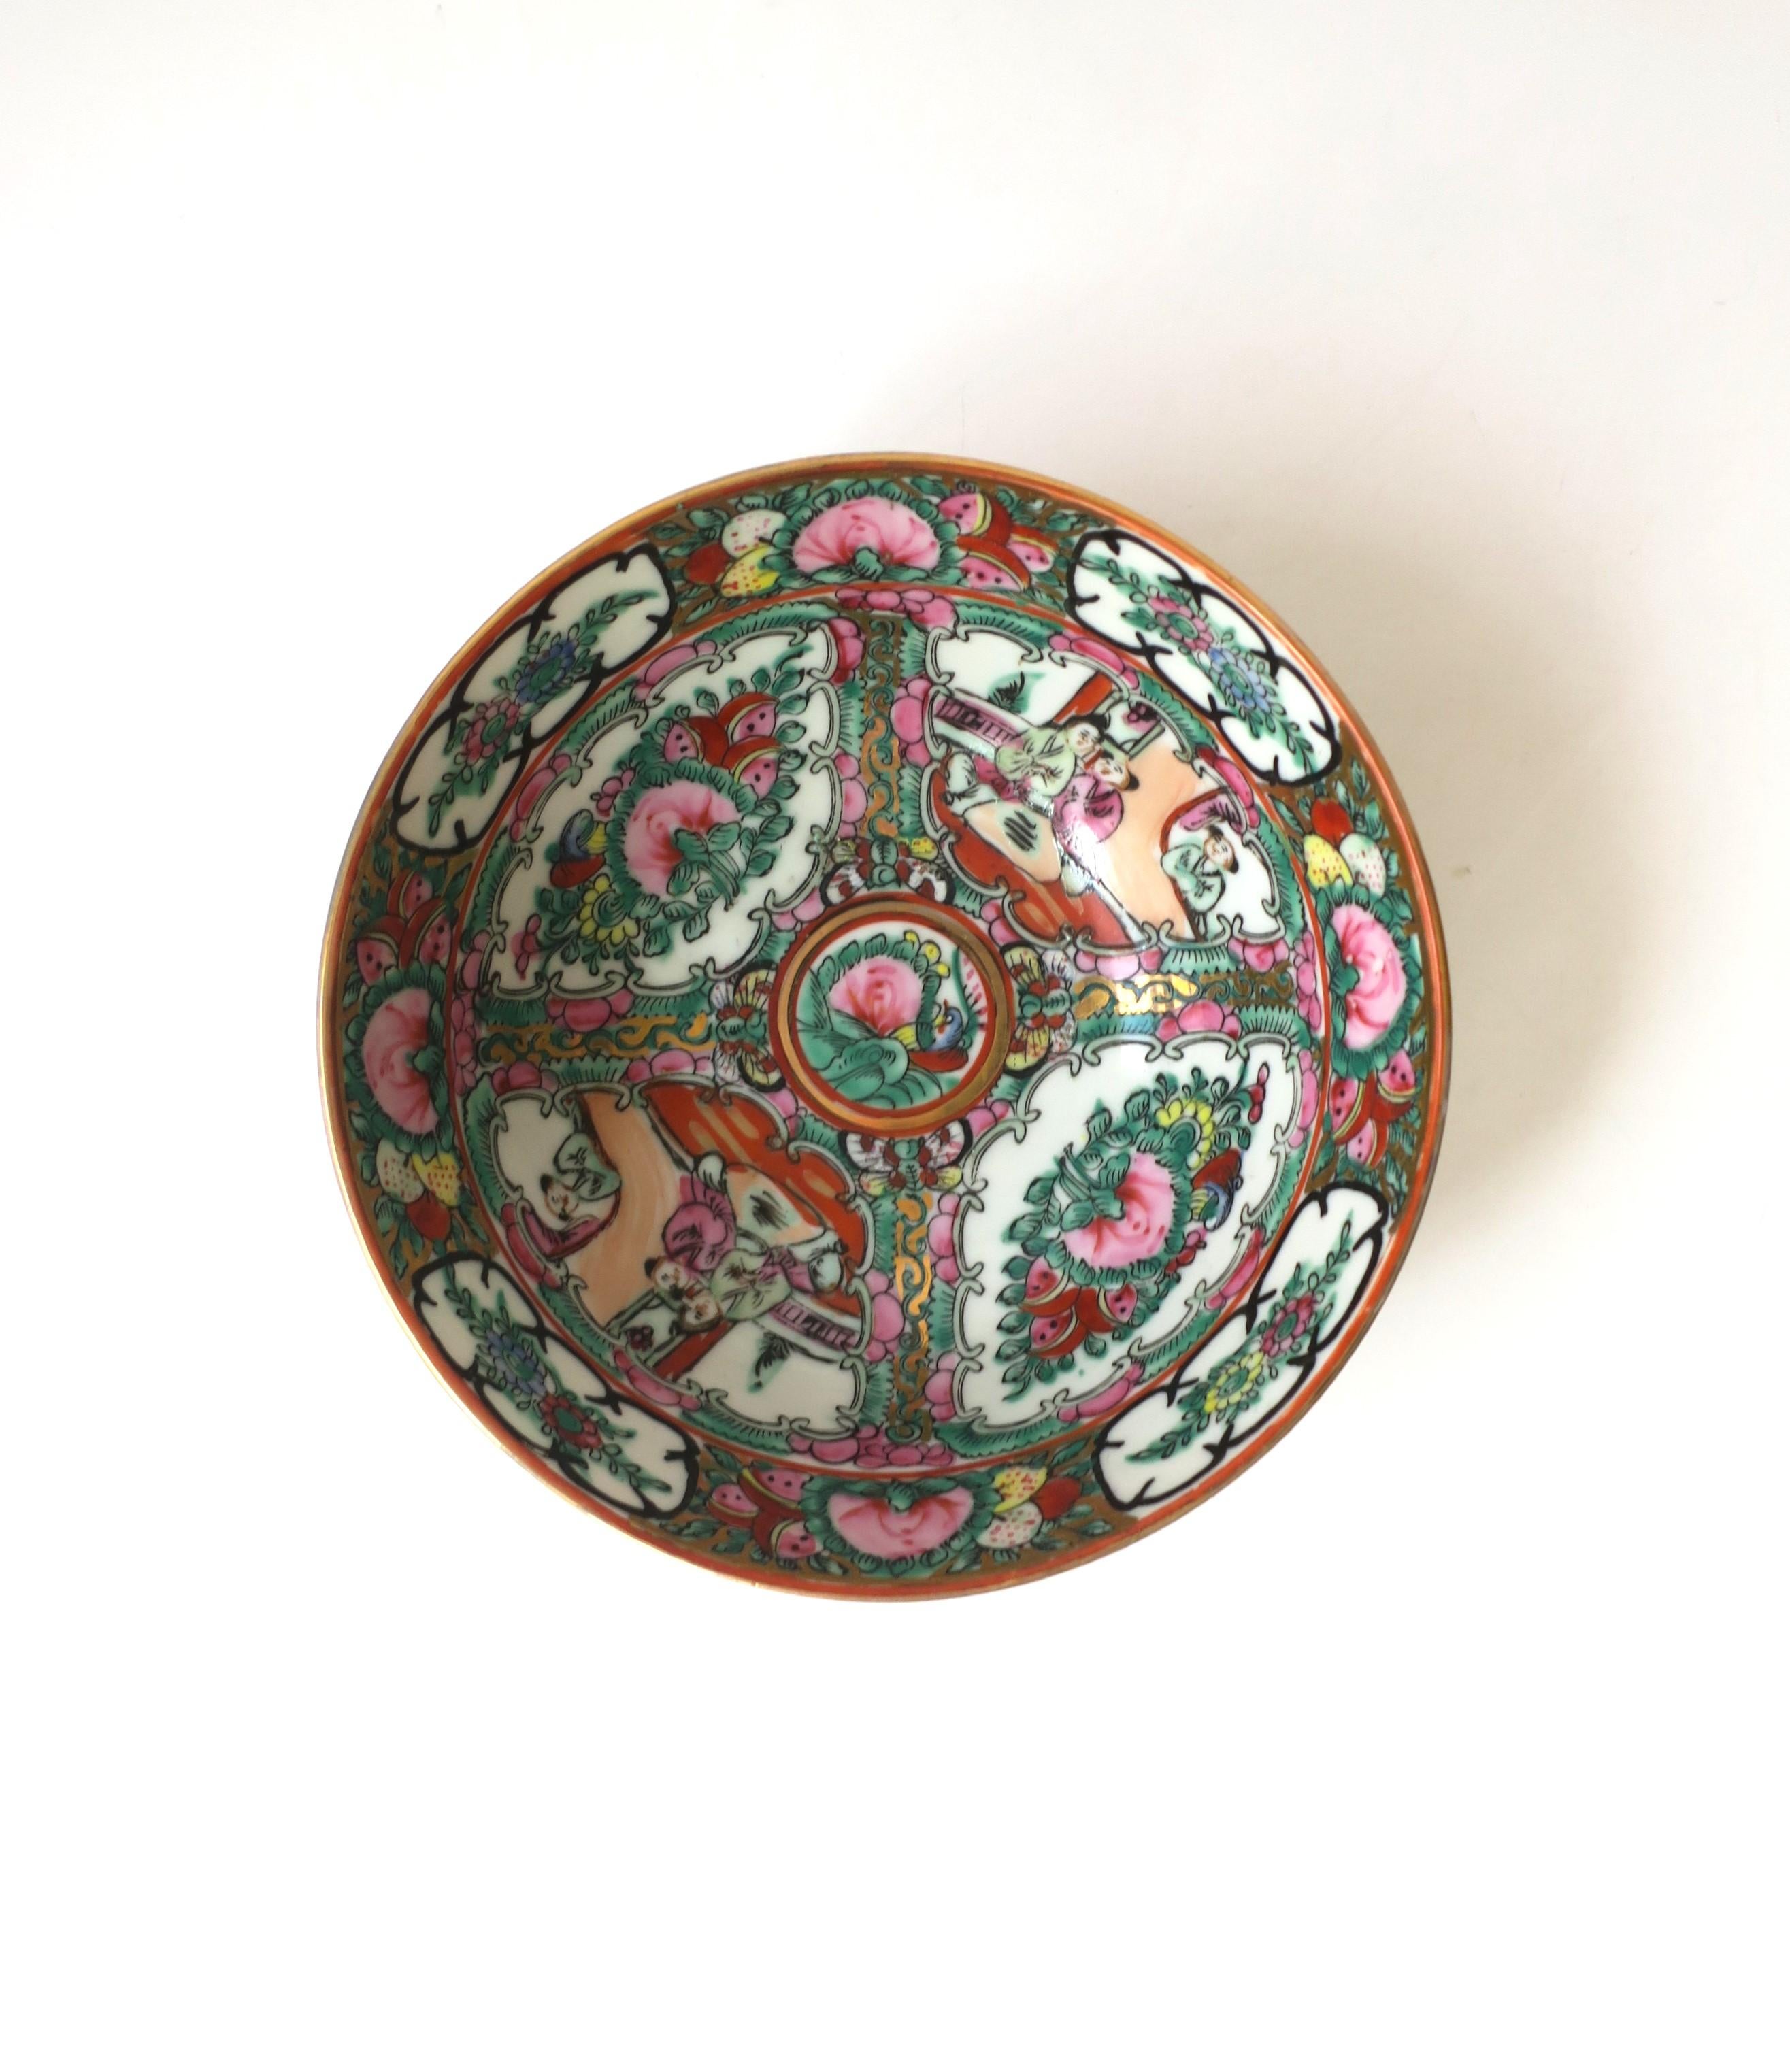 Magnifique bol en céramique décoré d'un médaillon rose de la Famille Rose dans le style Chinoiserie, vers le milieu du 20e siècle, Chine. Les couleurs comprennent le rose, le vert, le noir et l'or. Très bon état, comme le montrent les images. Aucun